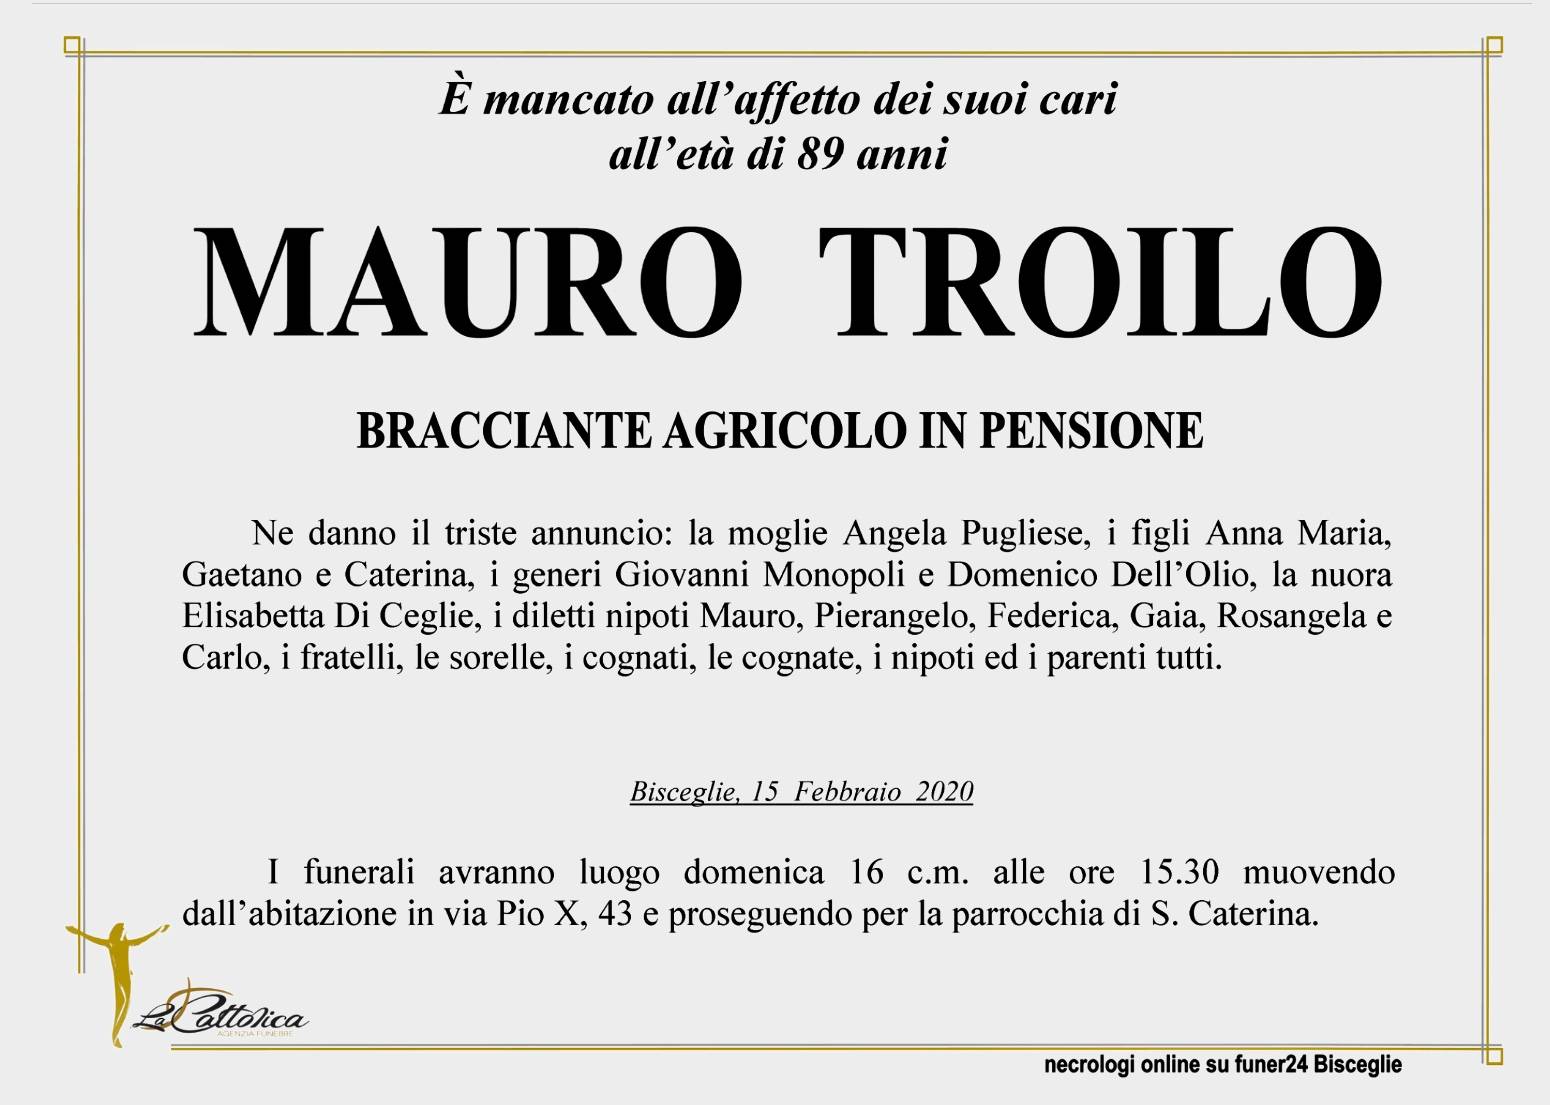 Mauro Troilo